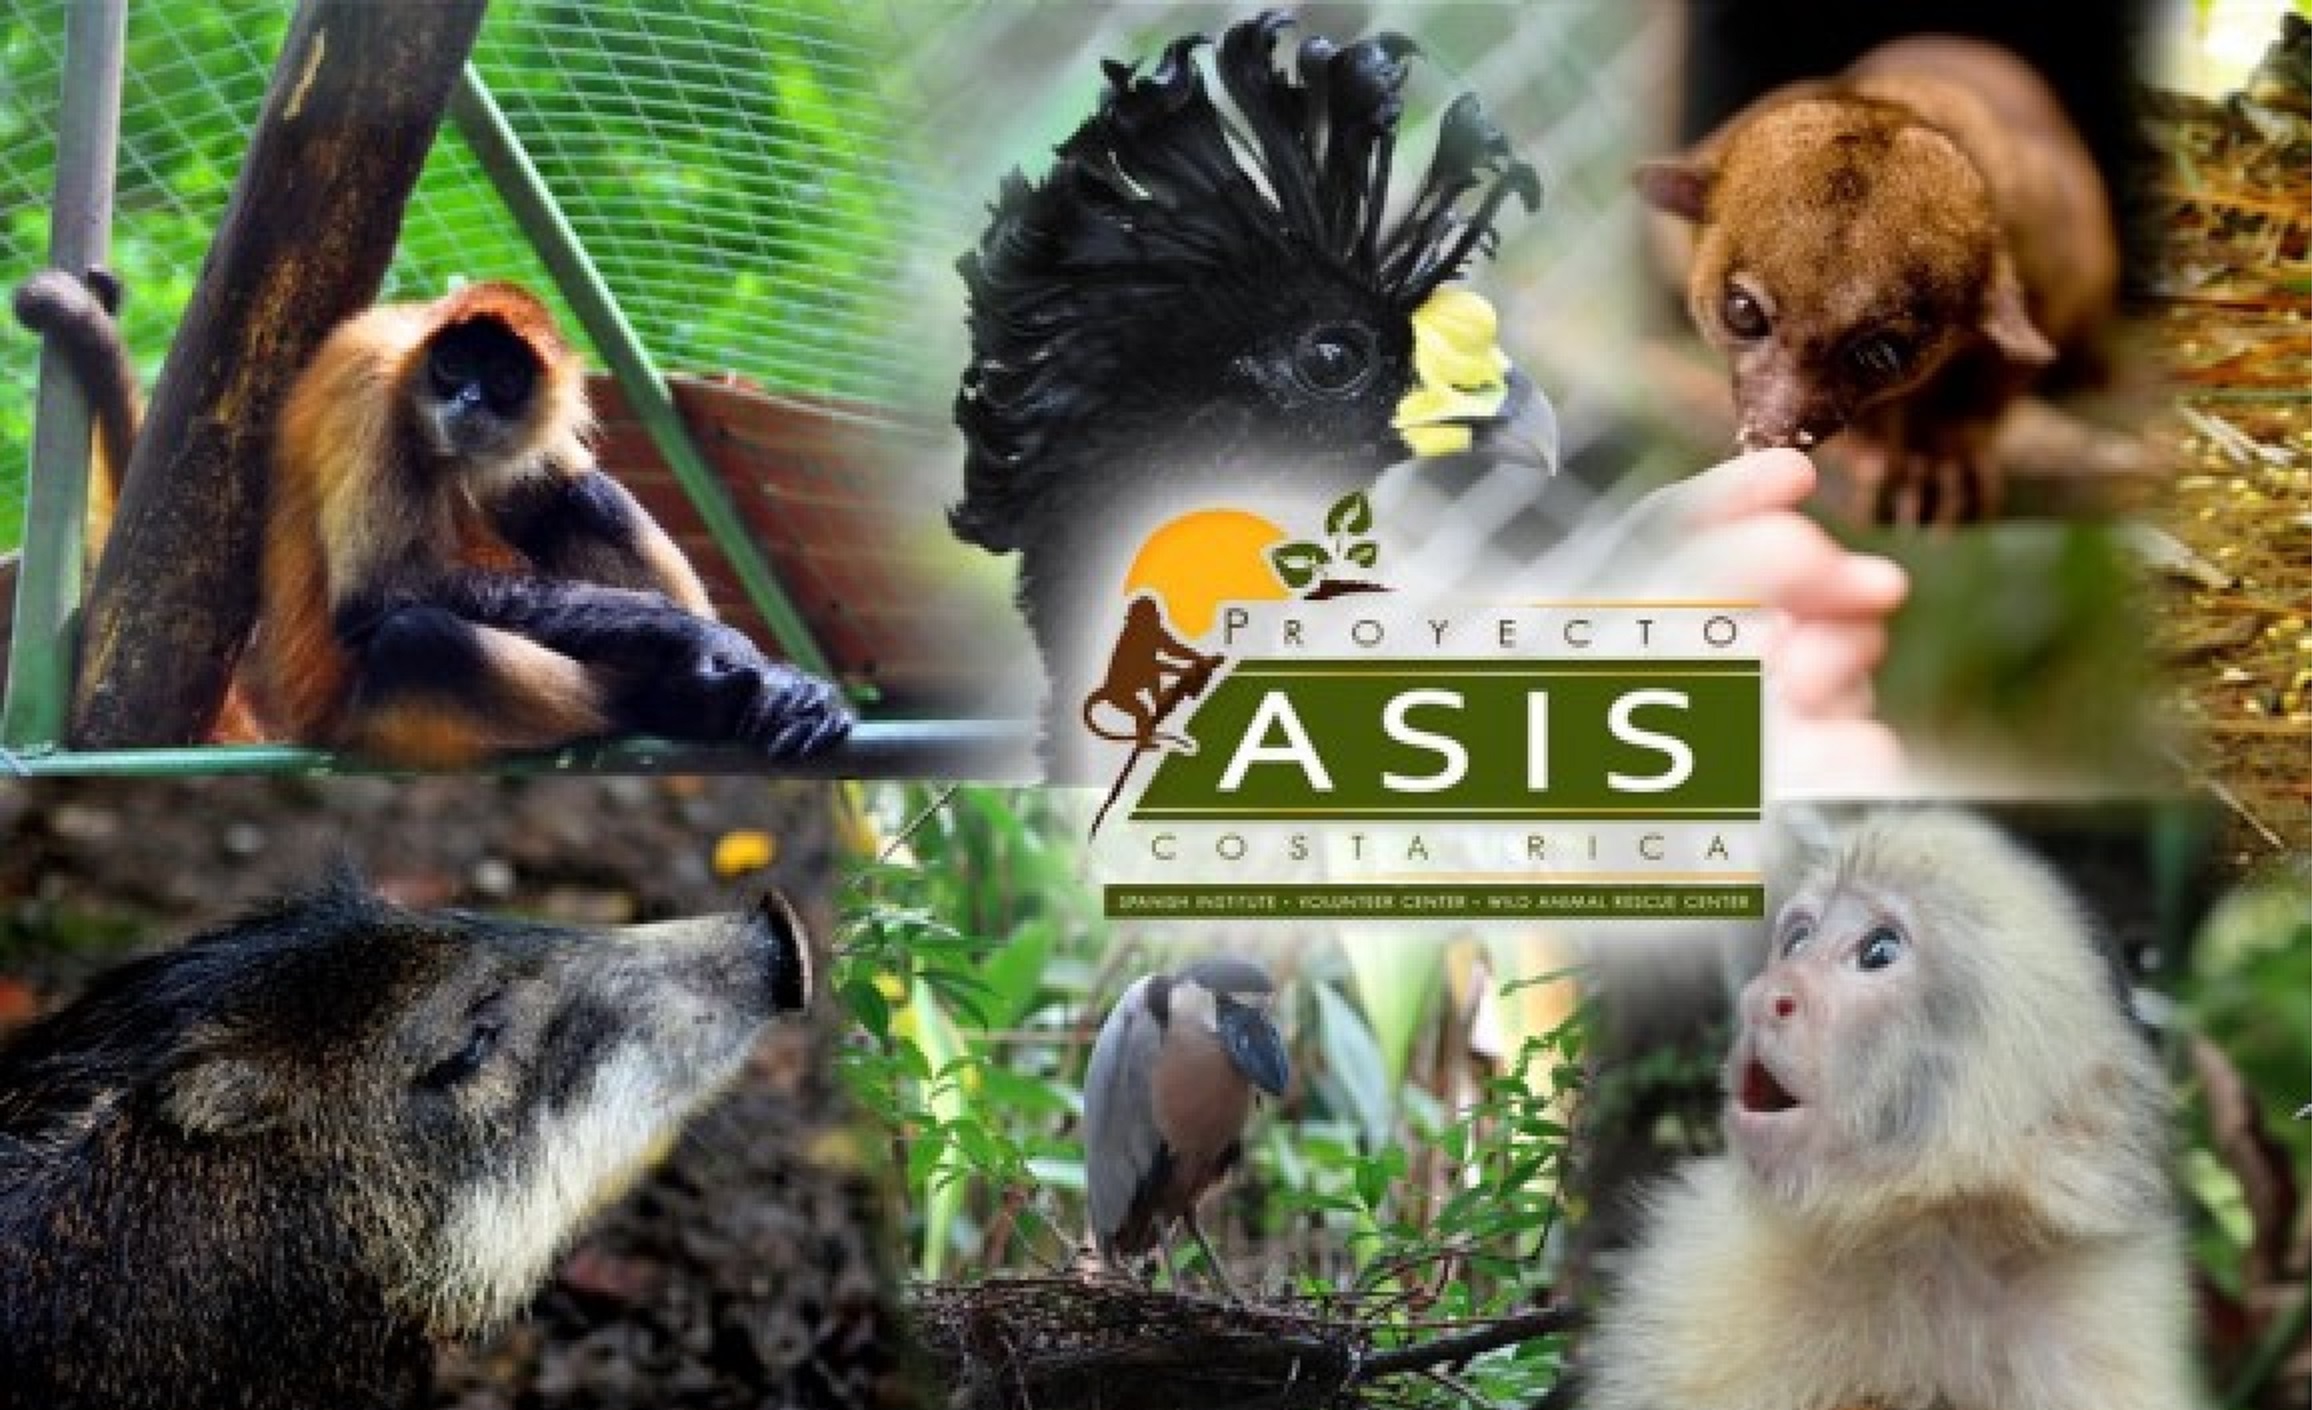 Proyecto Asis: Tour + Volunteer